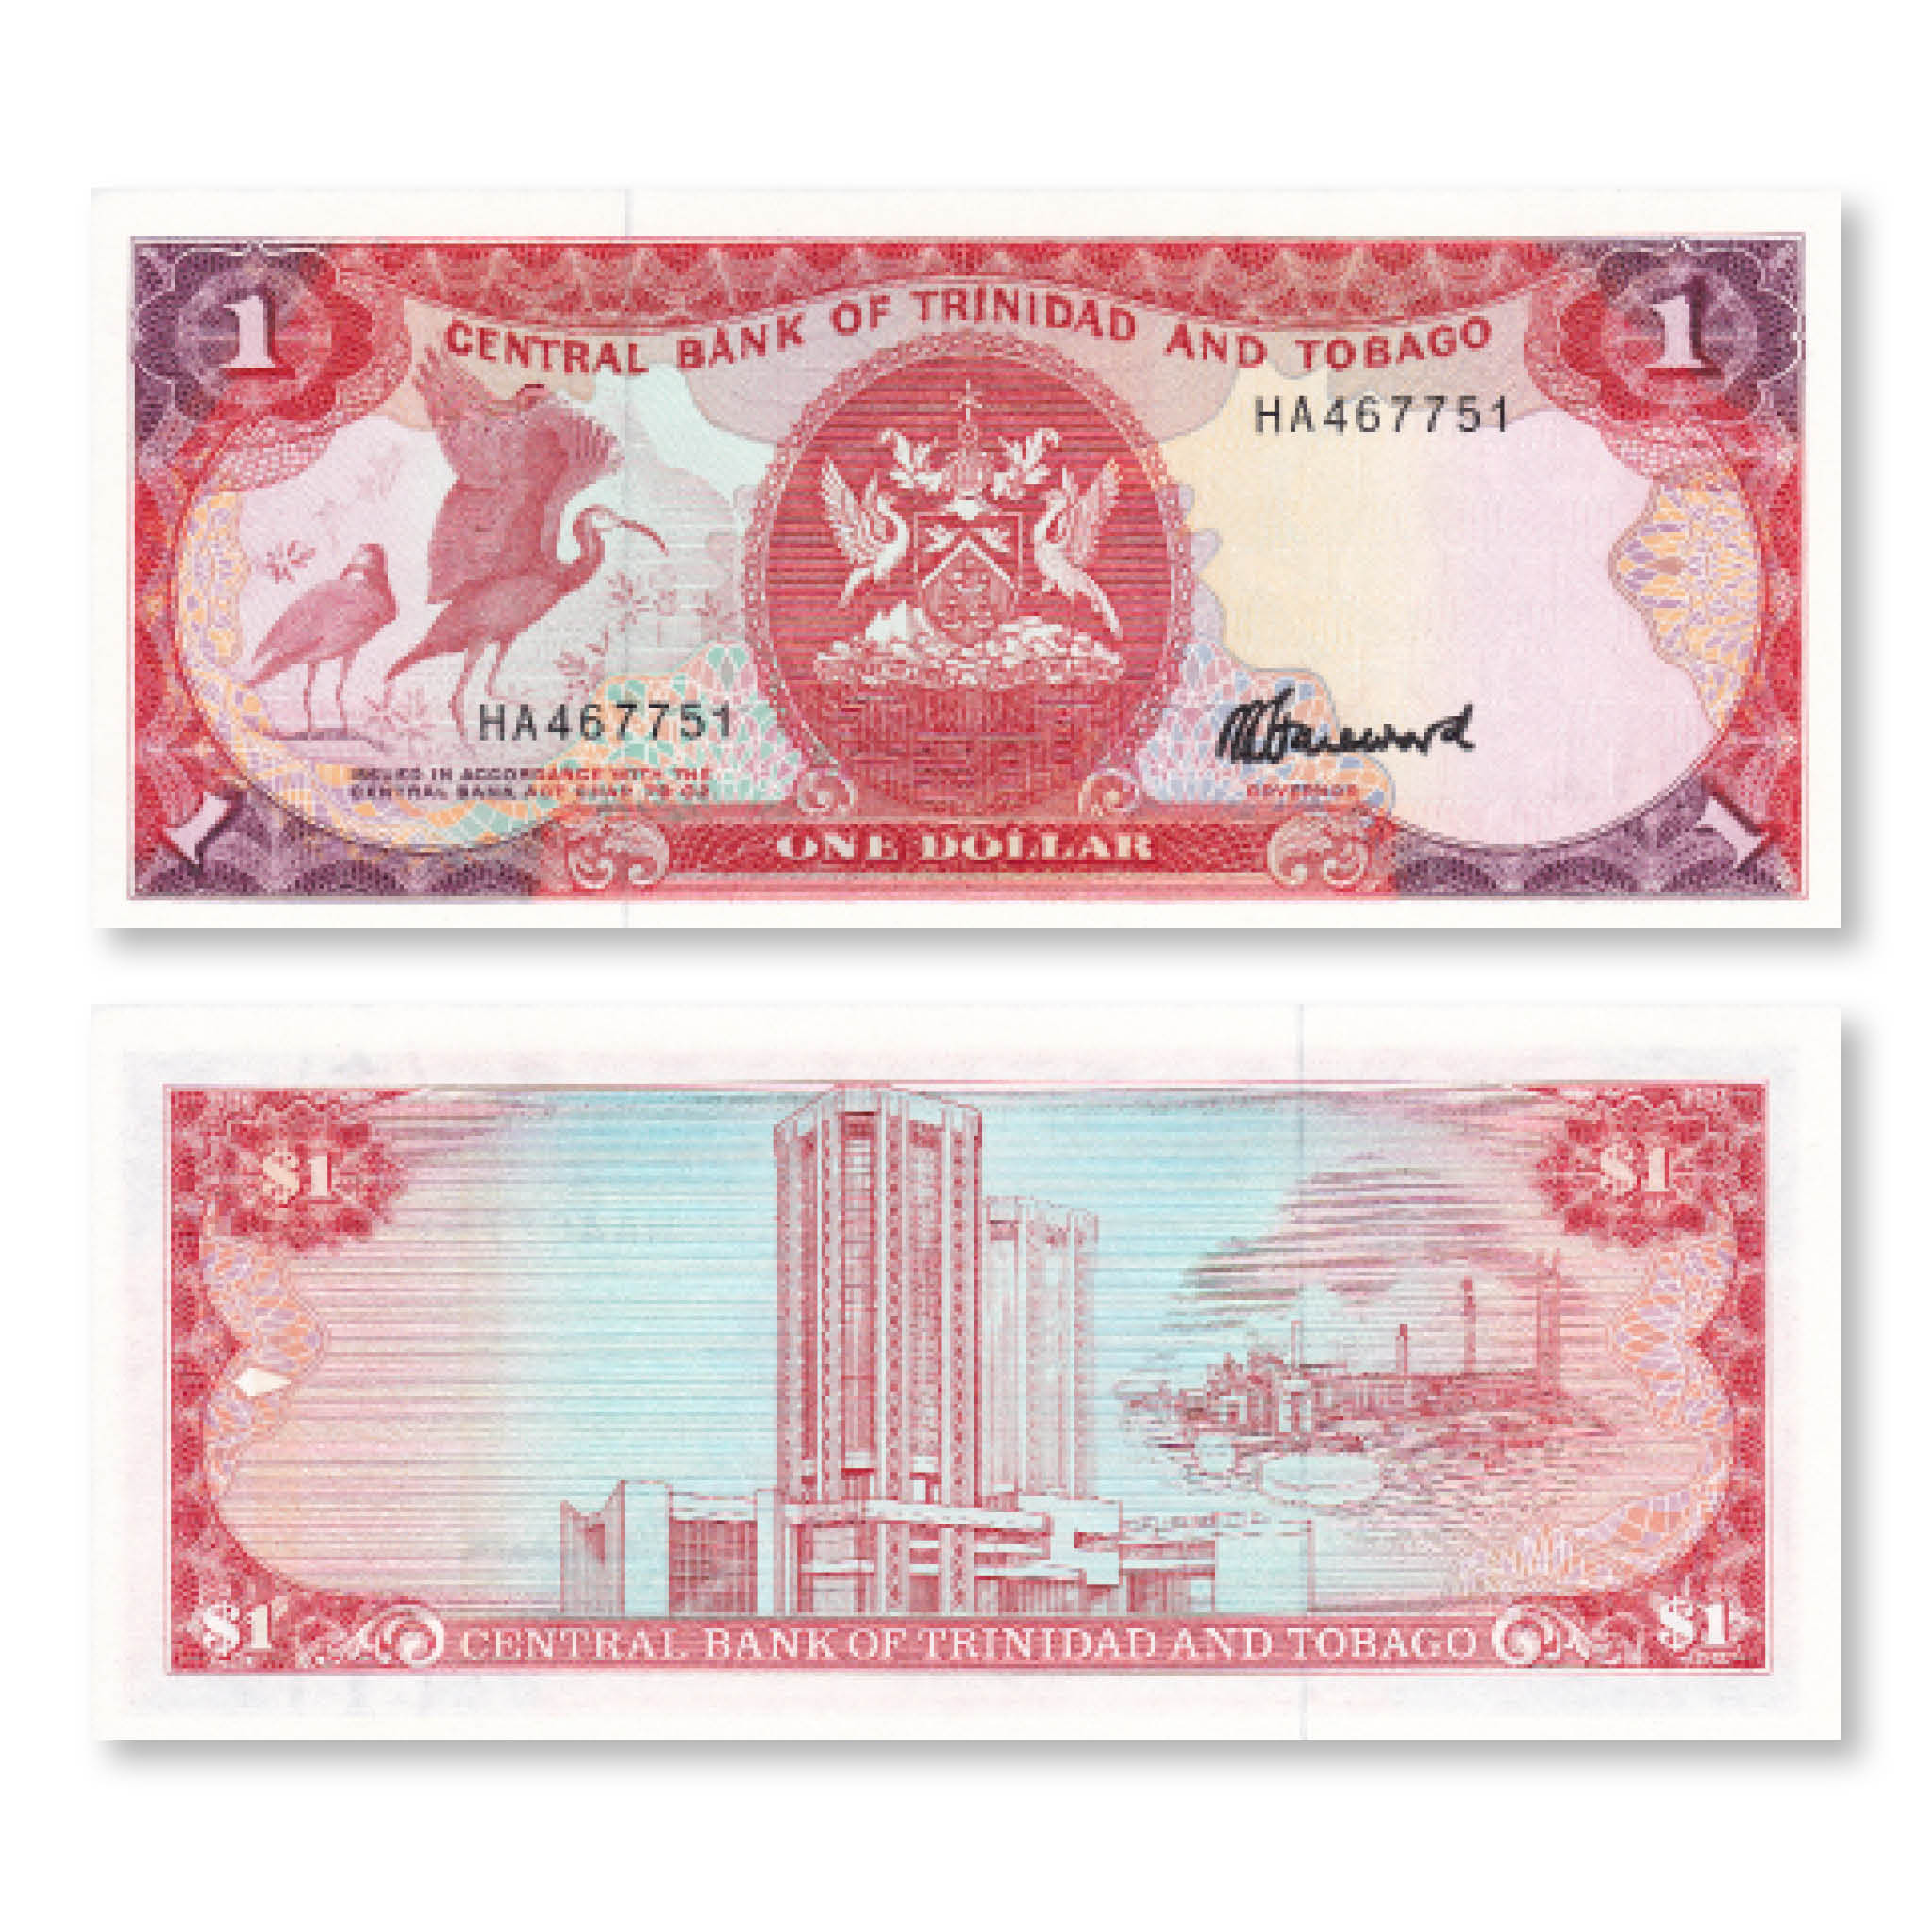 Trinidad & Tobago 1 Dollar, 1985, B211c, P36c, UNC - Robert's World Money - World Banknotes